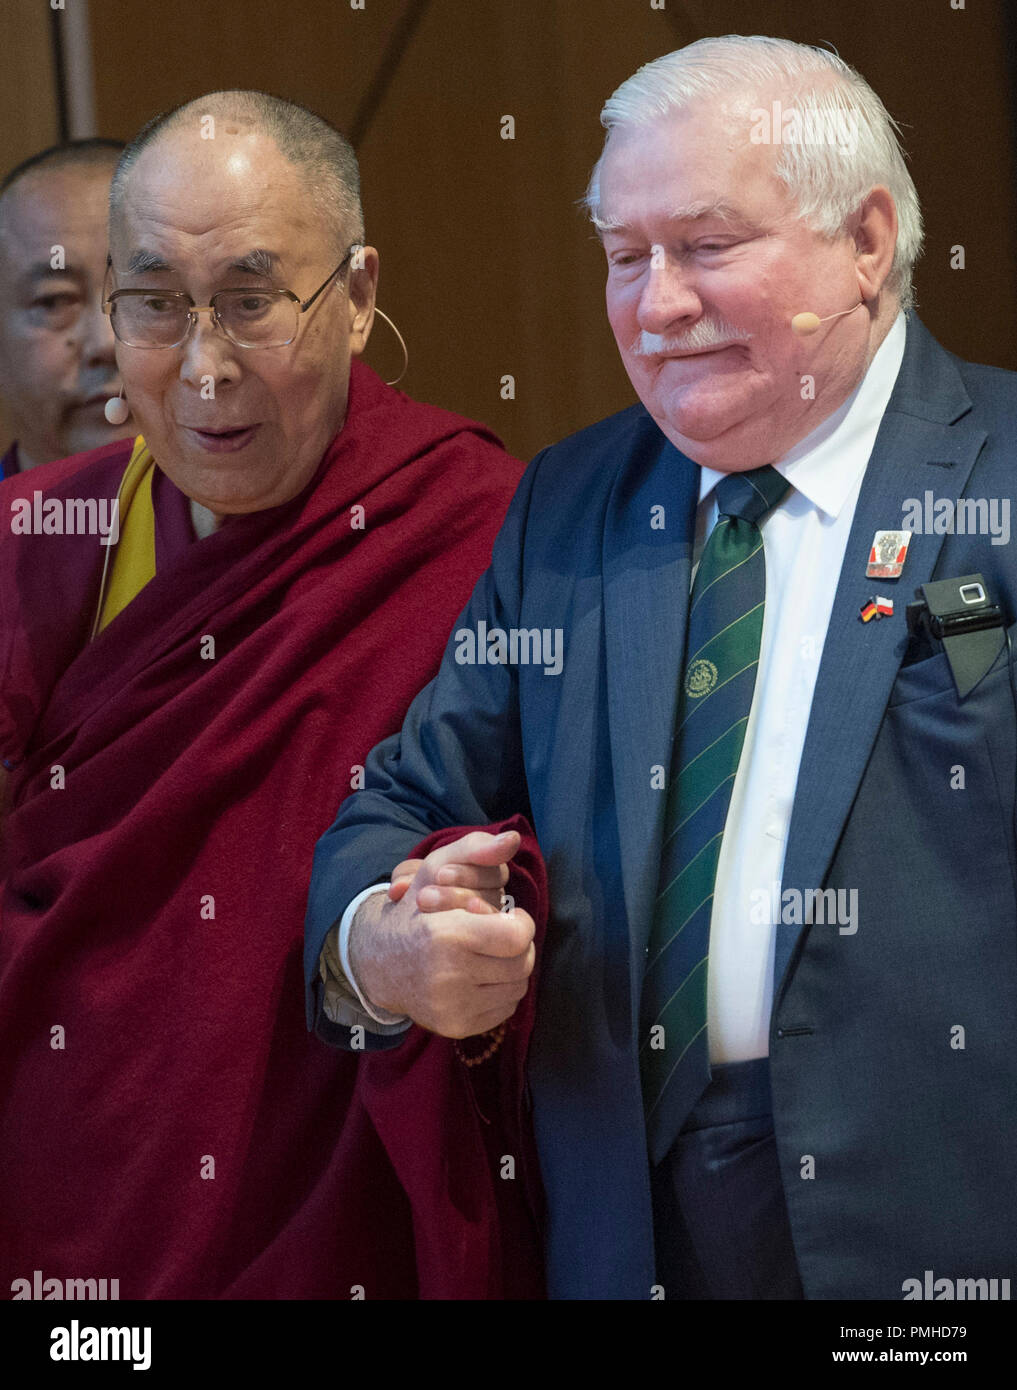 Darmstadt, Hesse, Alemania. 19 Sep, 2018. Lech Walesa (r) acompaña el Dalai Lama en el escenario en un simposio sobre "la no violencia es el camino". El líder espiritual de los tibetanos es de Hesse para una visita de dos días. Crédito: Boris Roessler/dpa/Alamy Live News Foto de stock